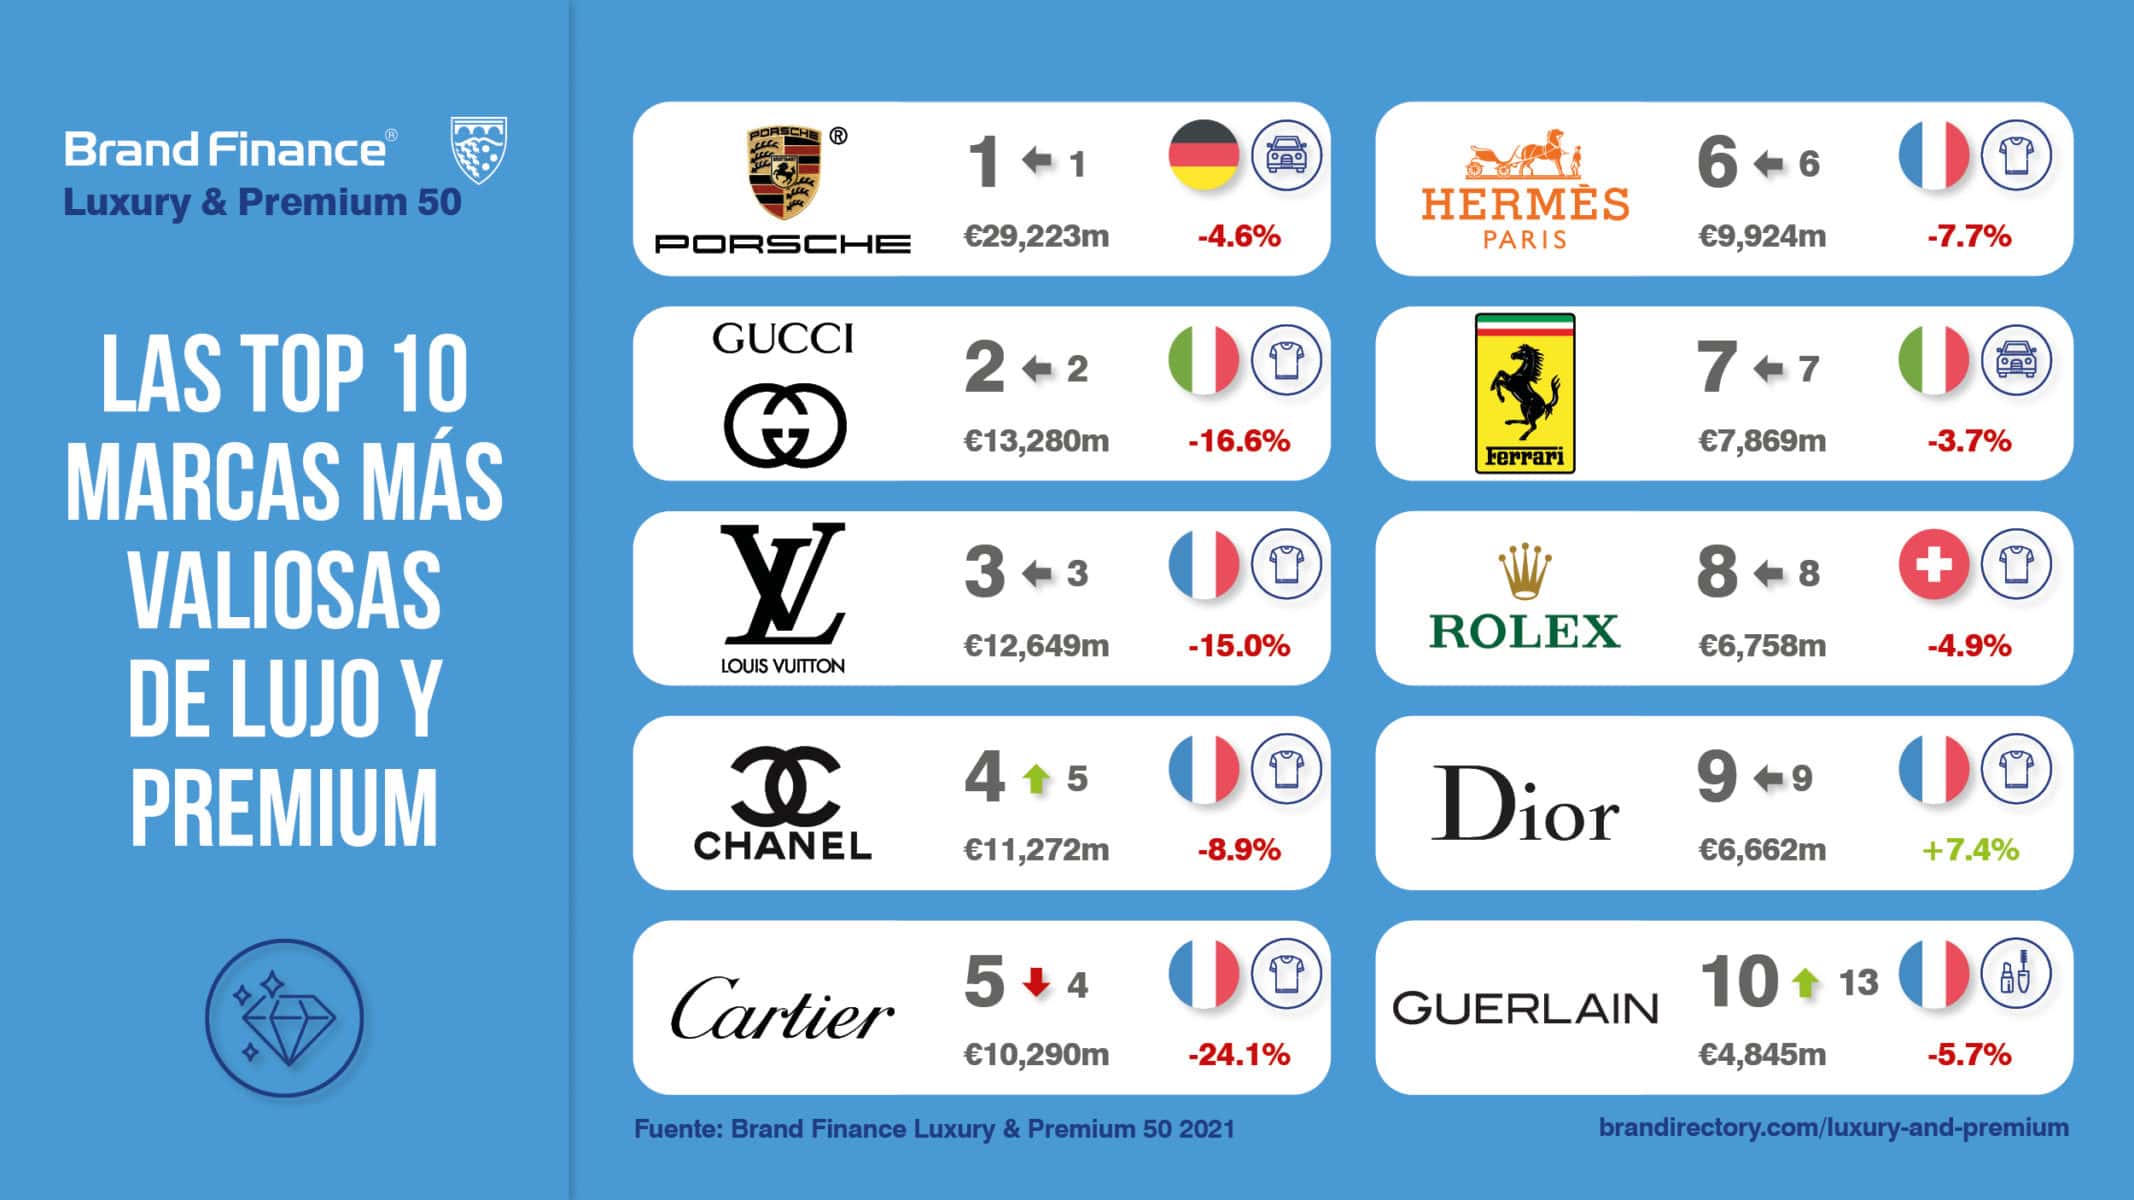 Estas son las marcas de lujo más valiosas según Brand Finance